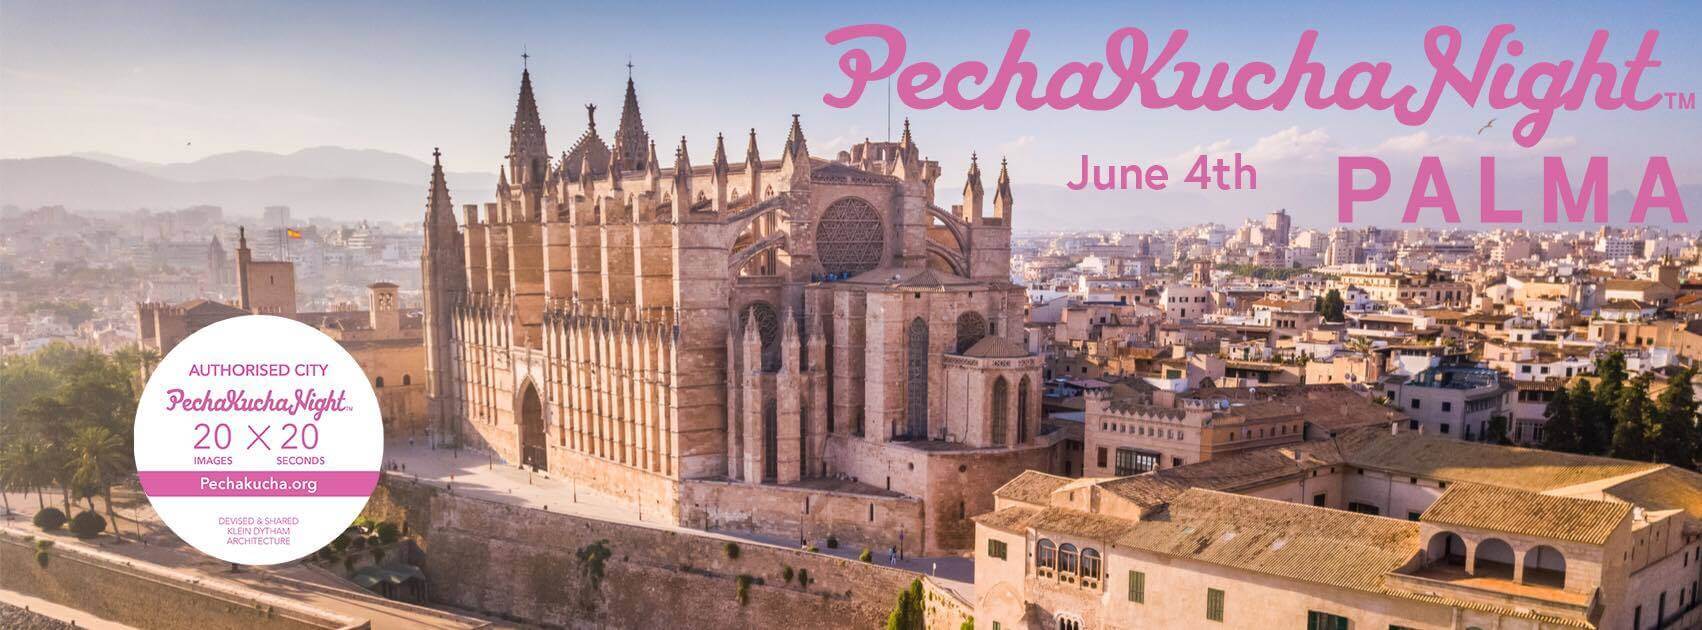 PechaKucha Night June 4th event